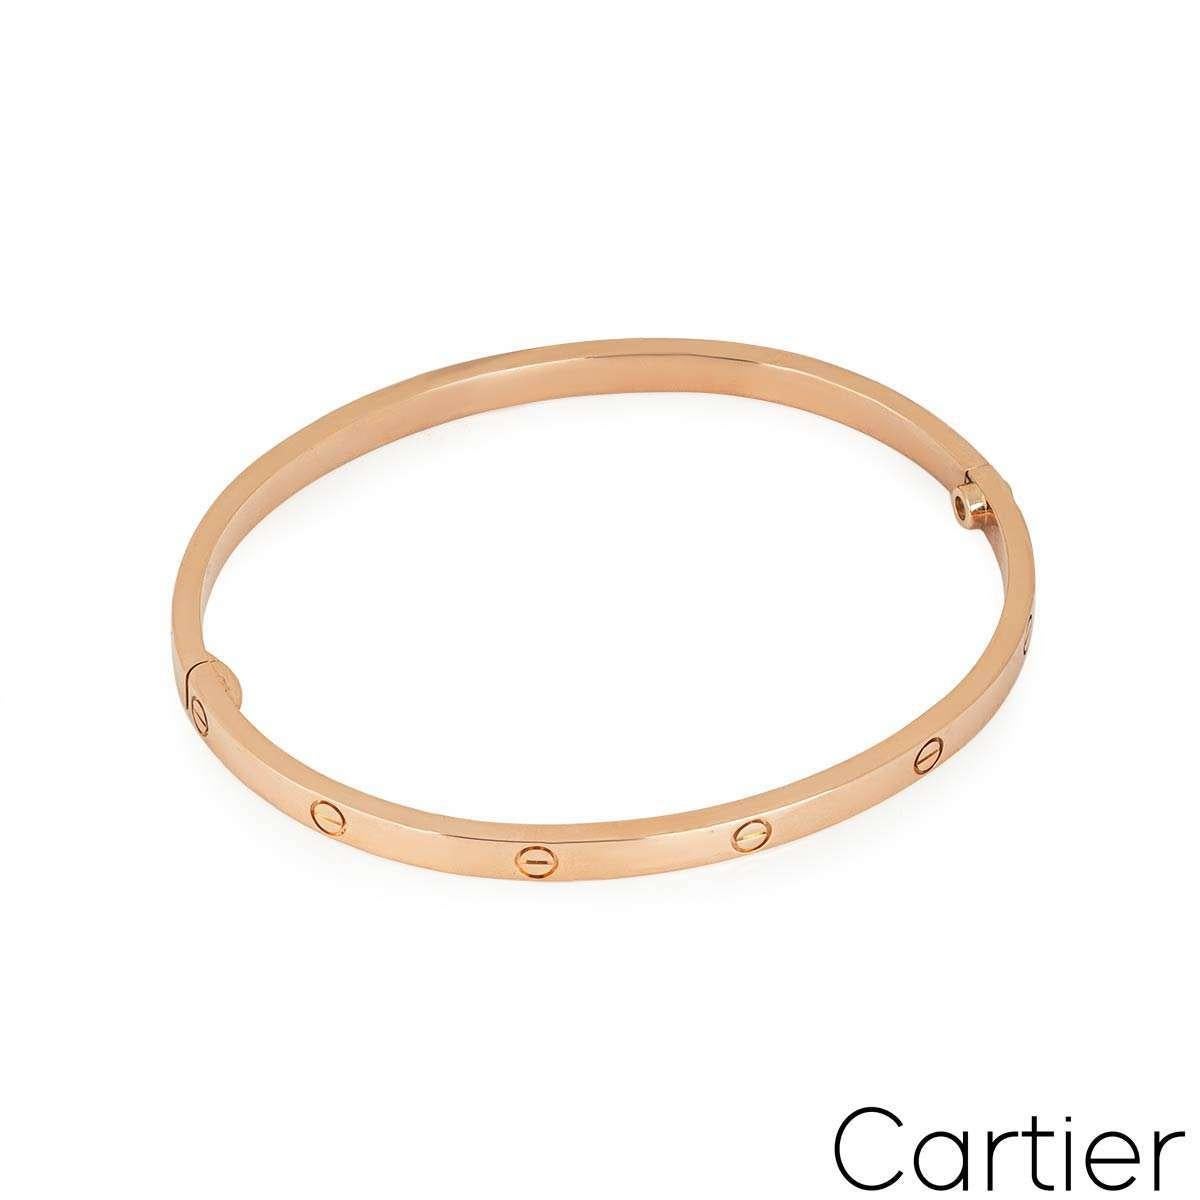 Un bracelet Cartier en or rose 18 carats de la collection Love. Ce modèle plus petit du bracelet Love classique comprend les motifs à vis emblématiques de Cartier et est doté d'une seule vis et d'une charnière. Le bracelet est de taille 15 et pèse